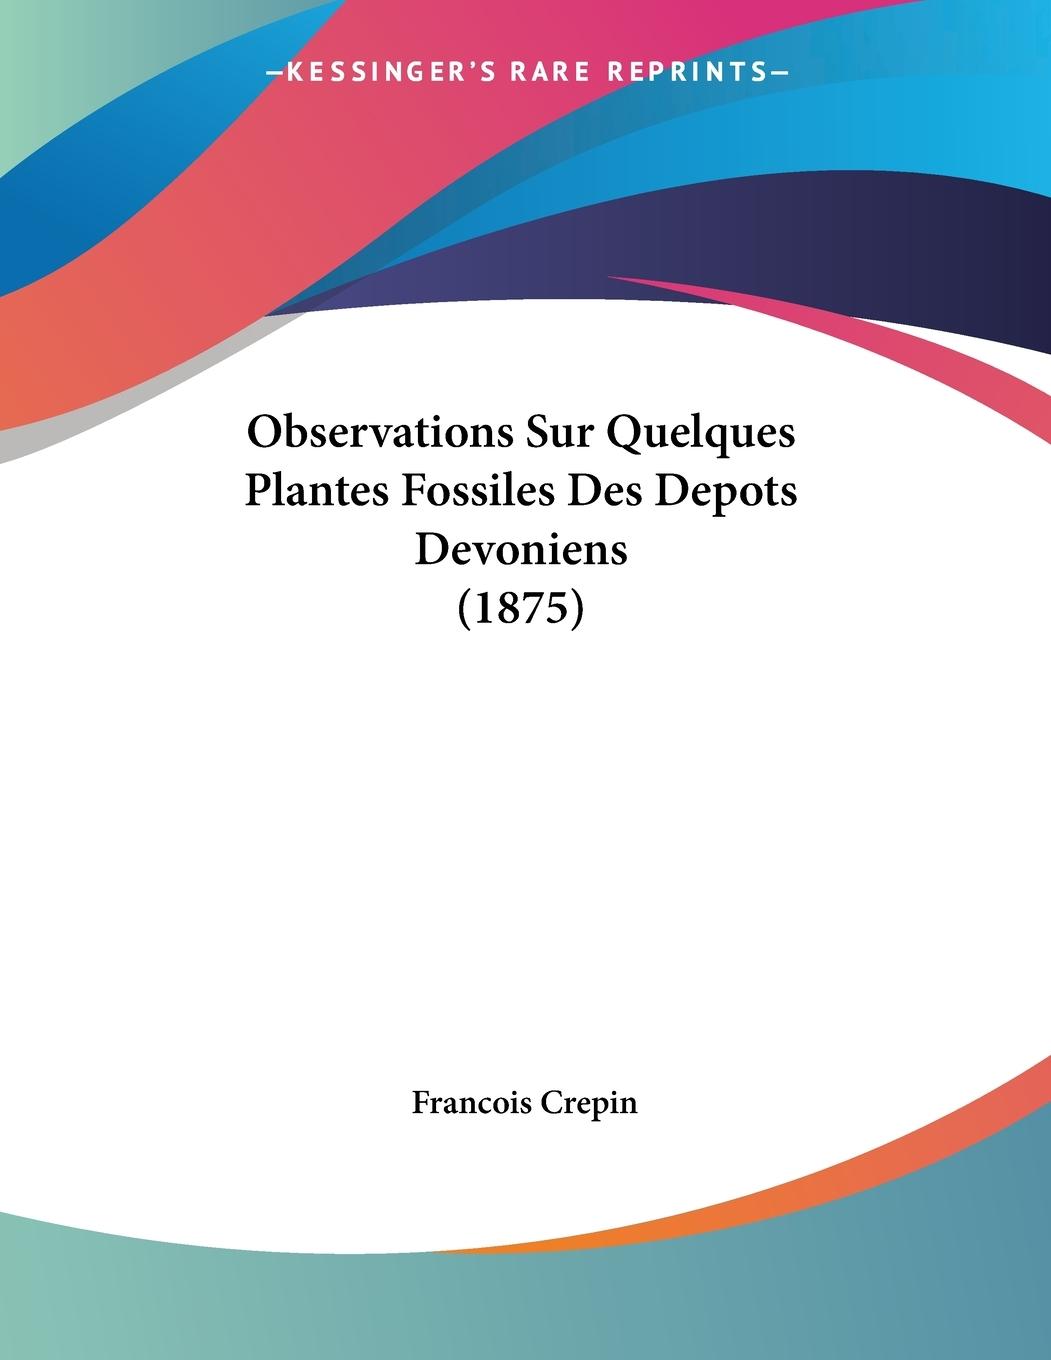 Observations Sur Quelques Plantes Fossiles Des Depots Devoniens (1875) - Crepin, Francois